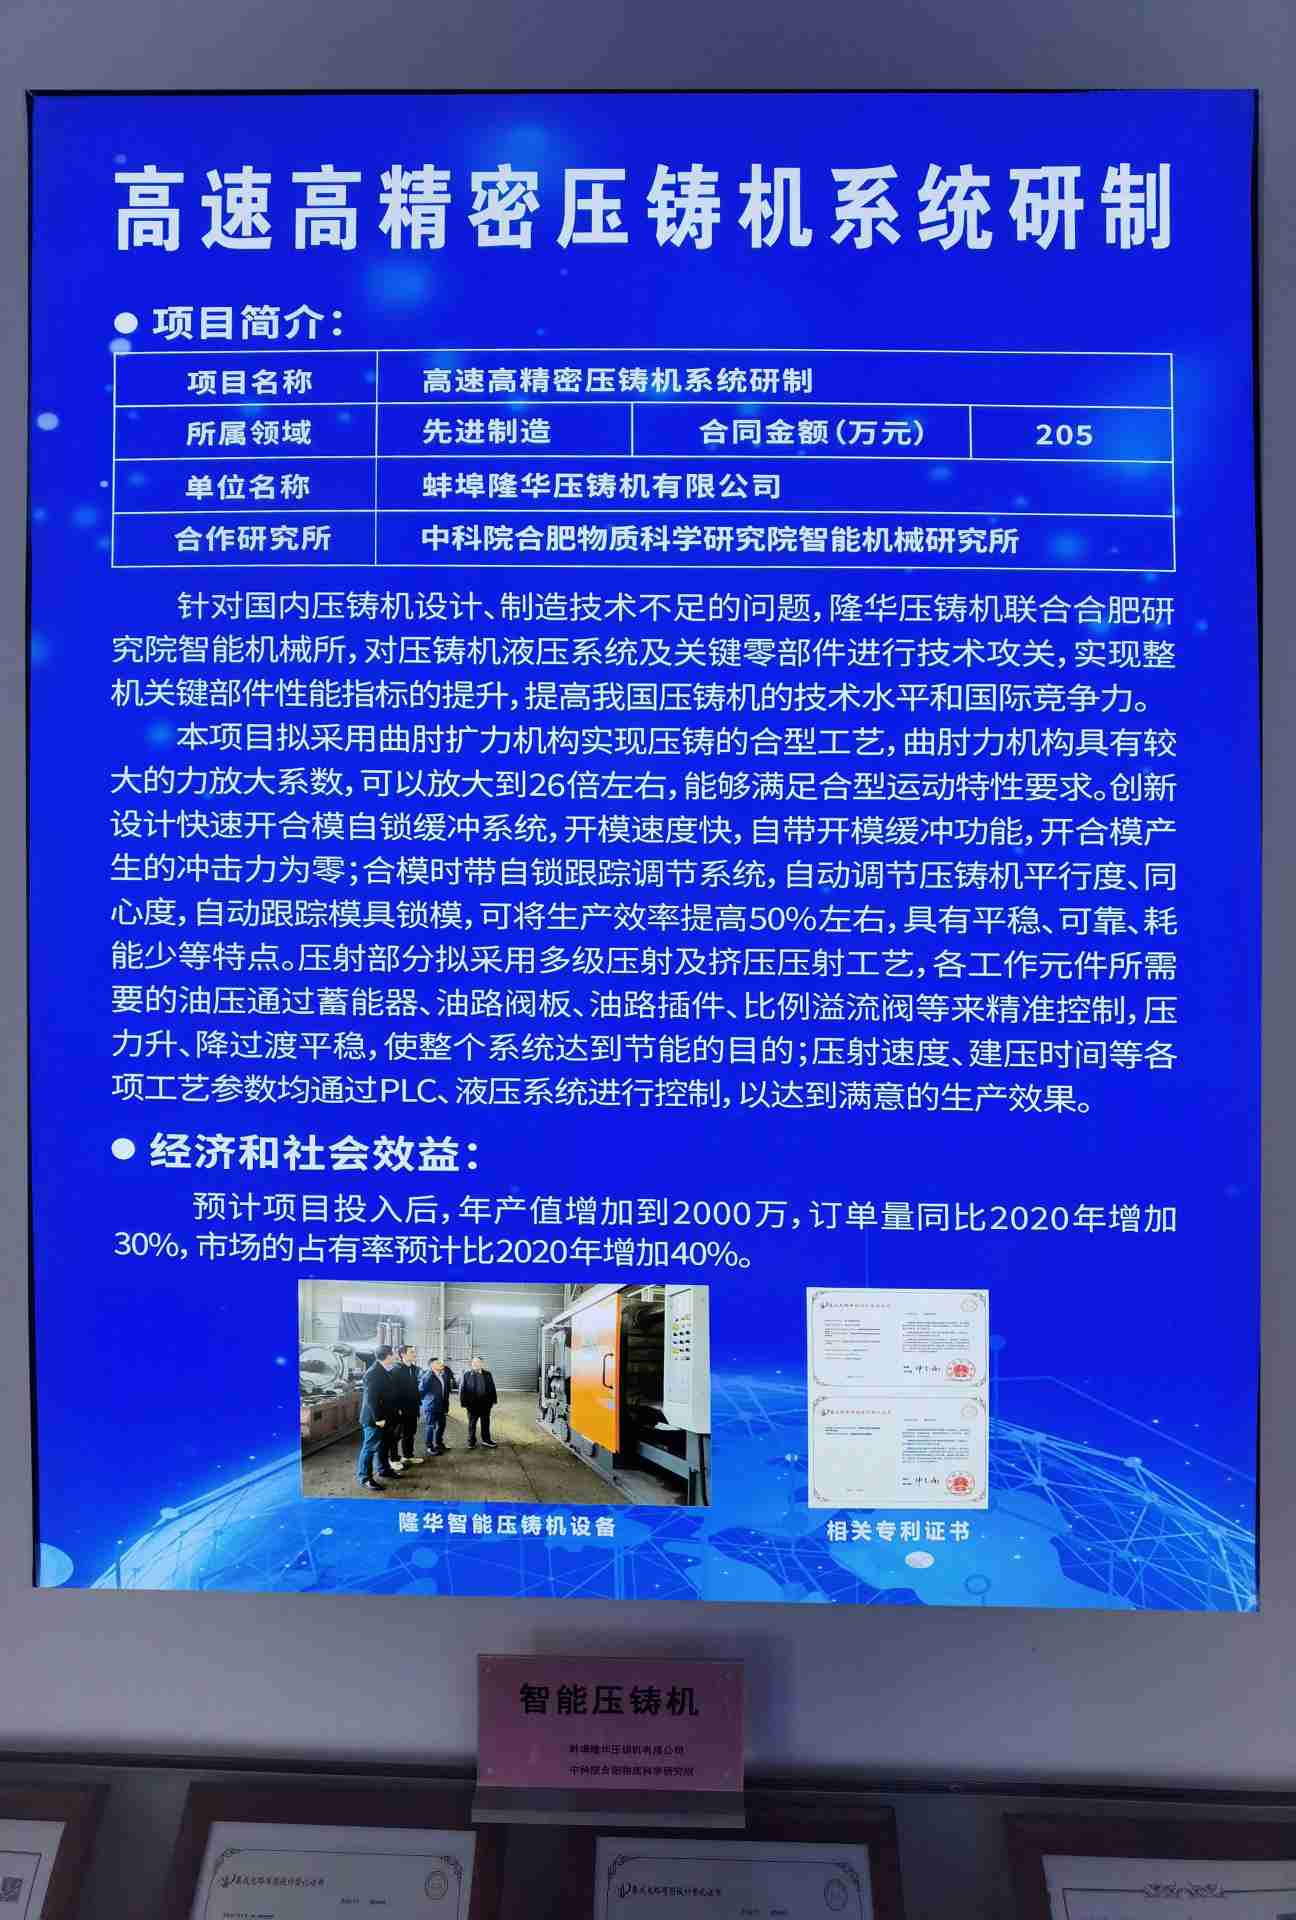 تهانينا على التنفيذ السلس للمشروع بين شركتنا والأكاديمية الصينية للعلوم